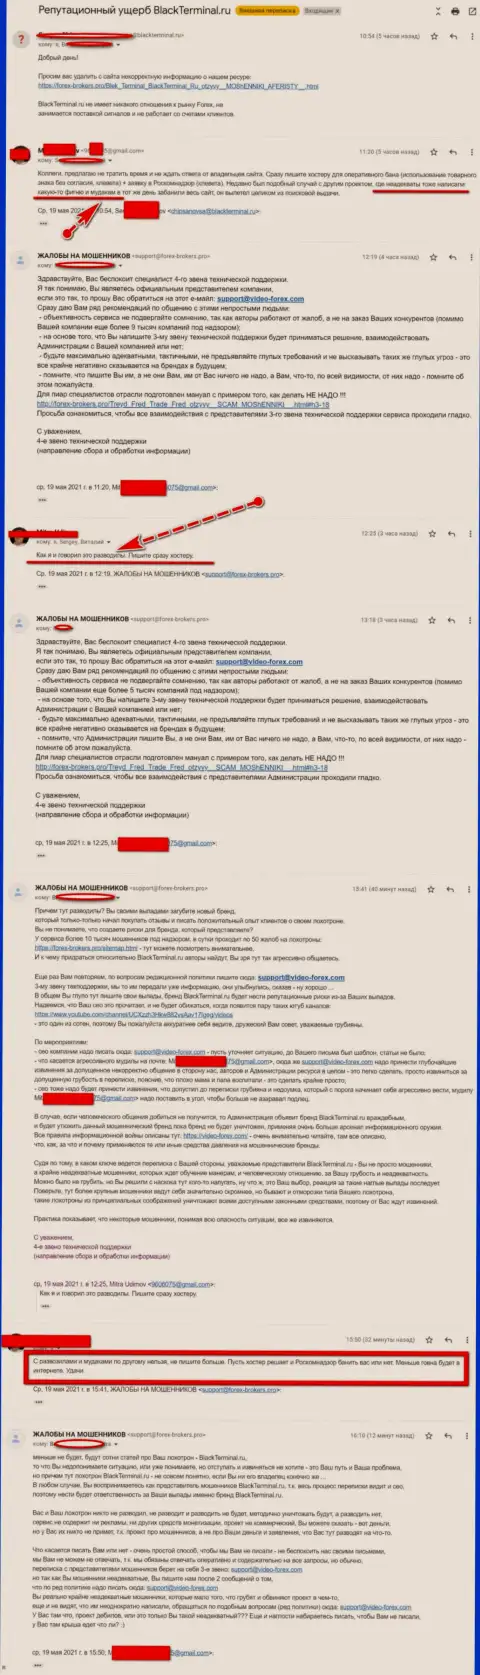 Онлайн переписка Администрации веб-сайта, с комментами о BlackTerminal Ru, с некими представителями этого неправомерно действующего сервиса